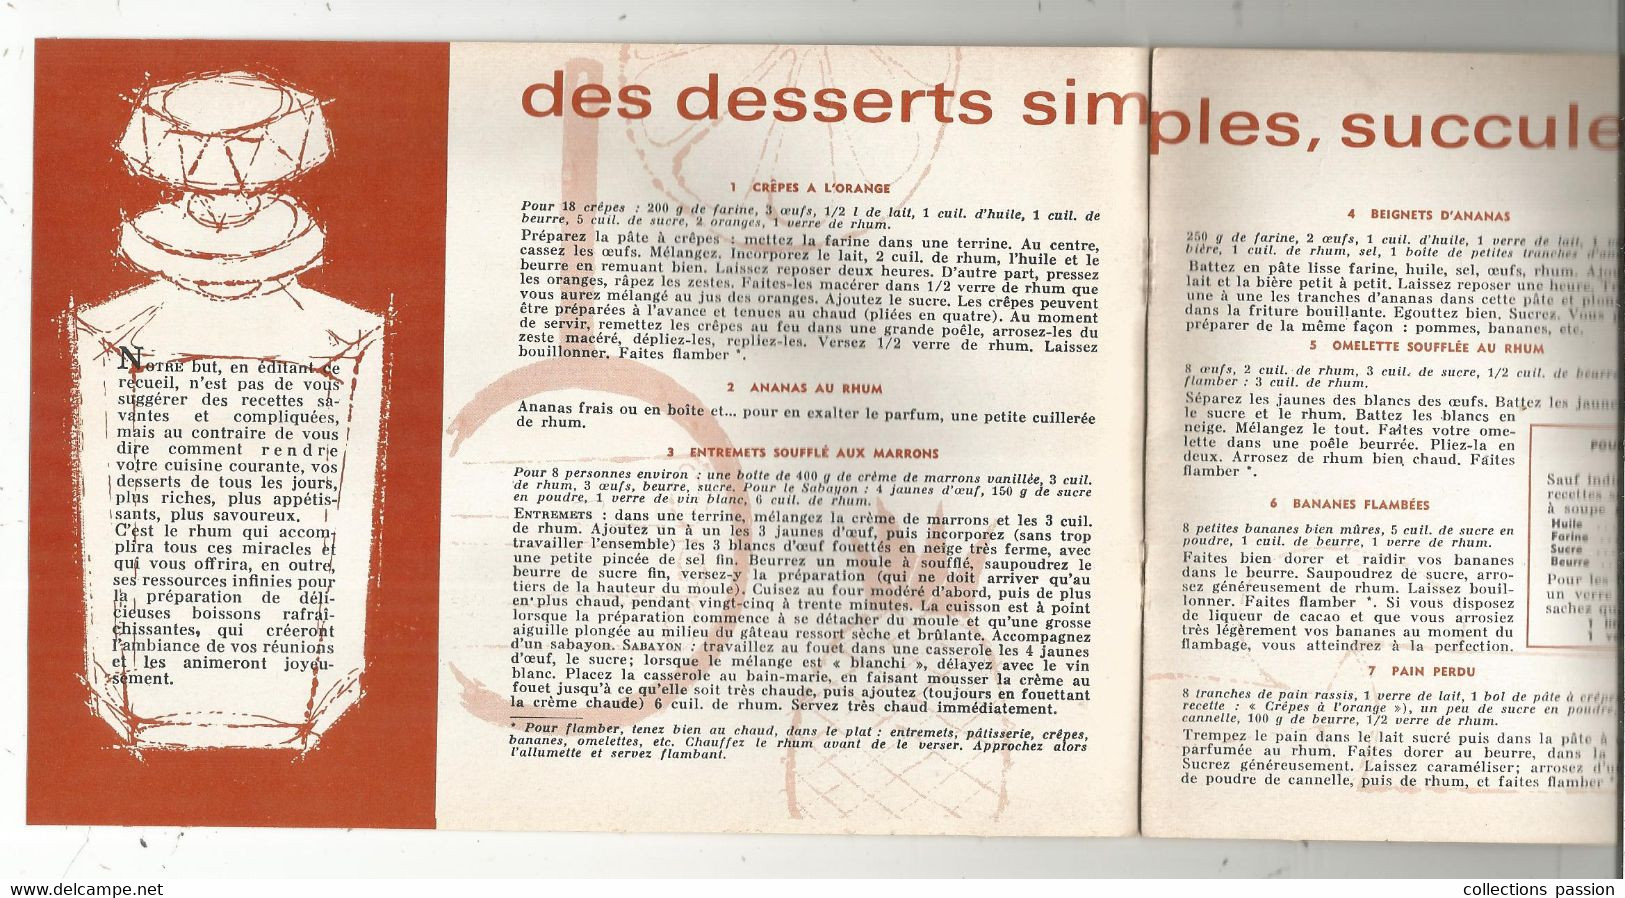 Publicité 14 Pages, 50 Recettes Gourmandes, RODIER , Vins Et Spititueux , CIVRAY , Vienne , 5 Scans,  Frais Fr 2.75 E - Advertising